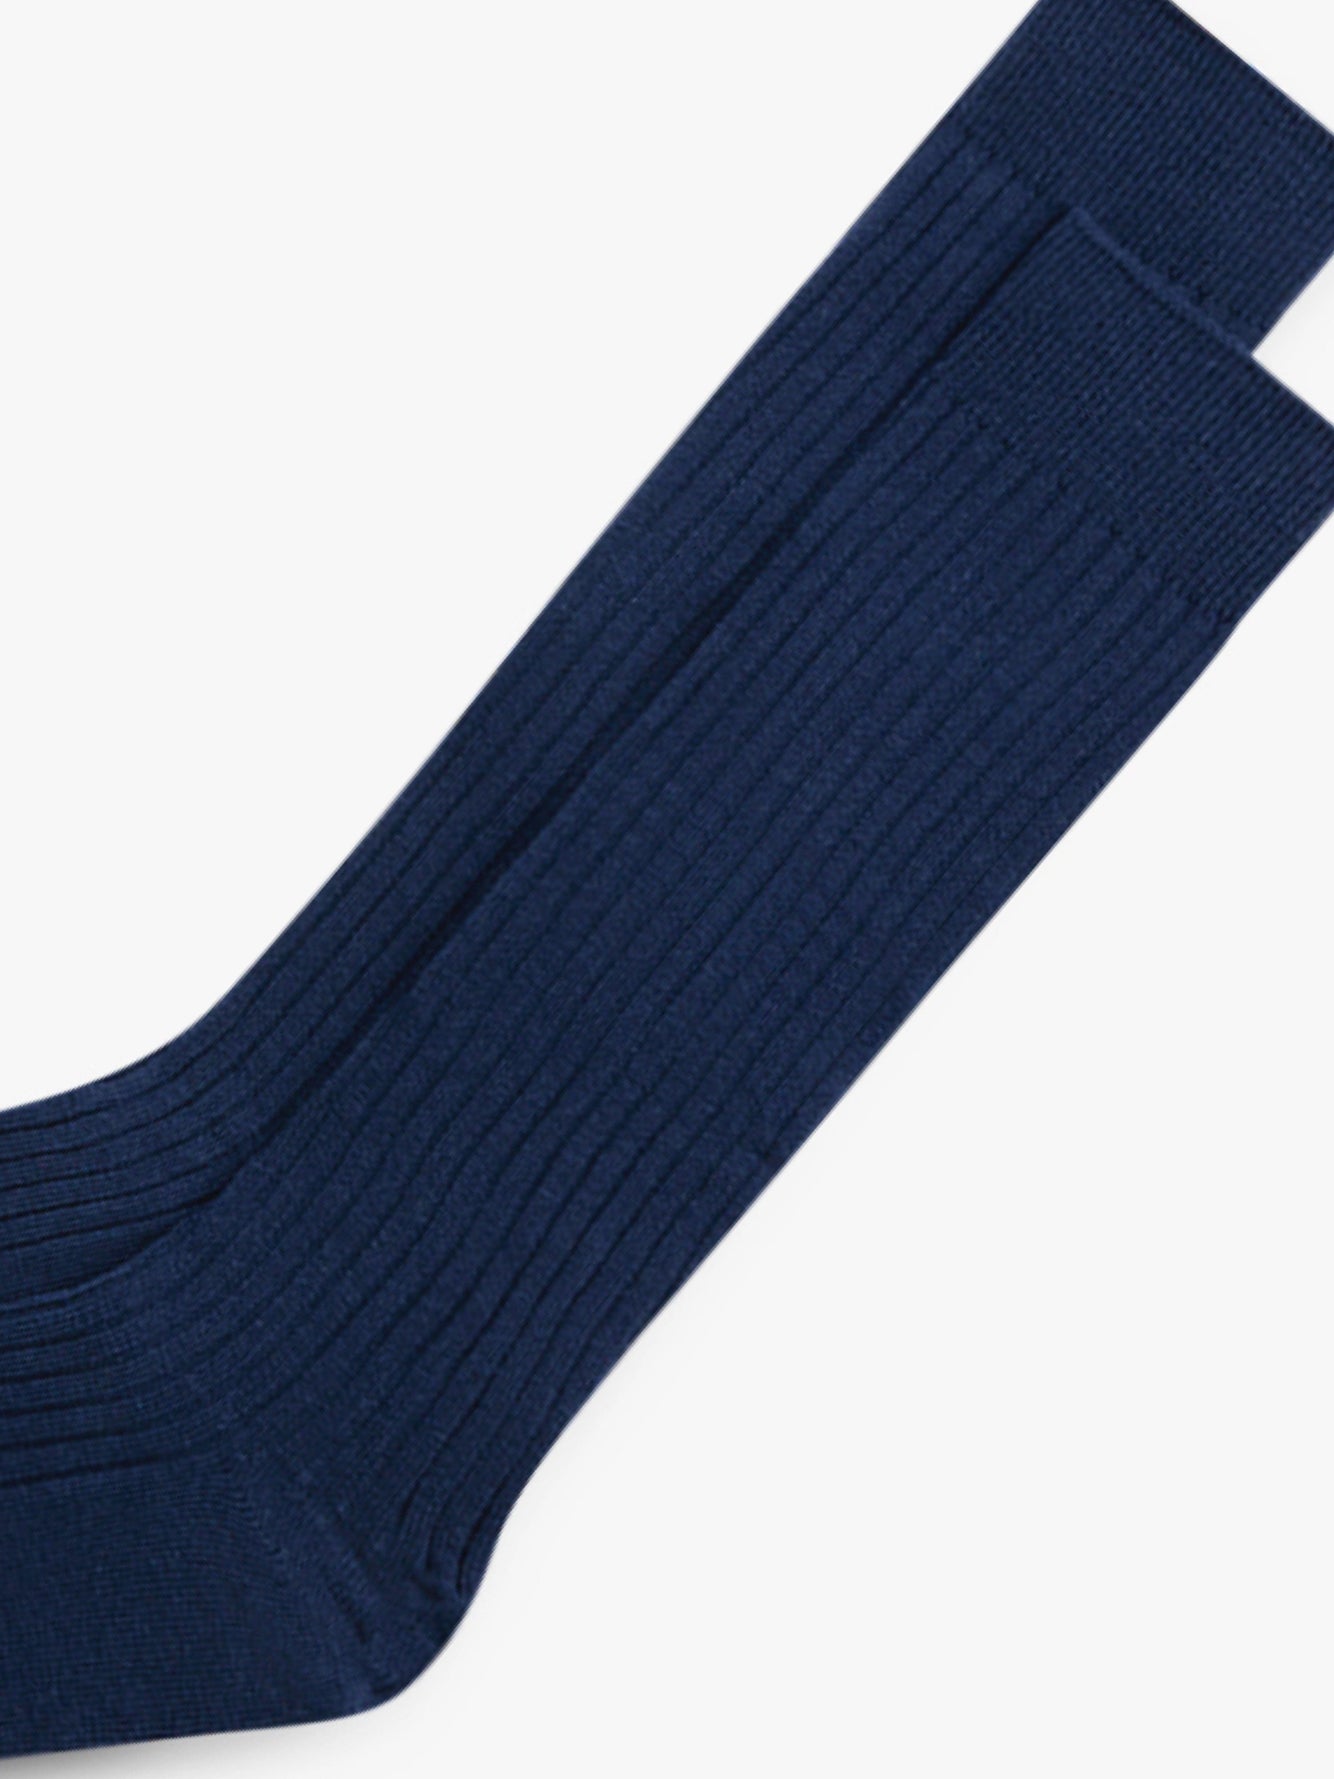 Grand Le Mar - Navy Ribbed Cotton Pima Socks